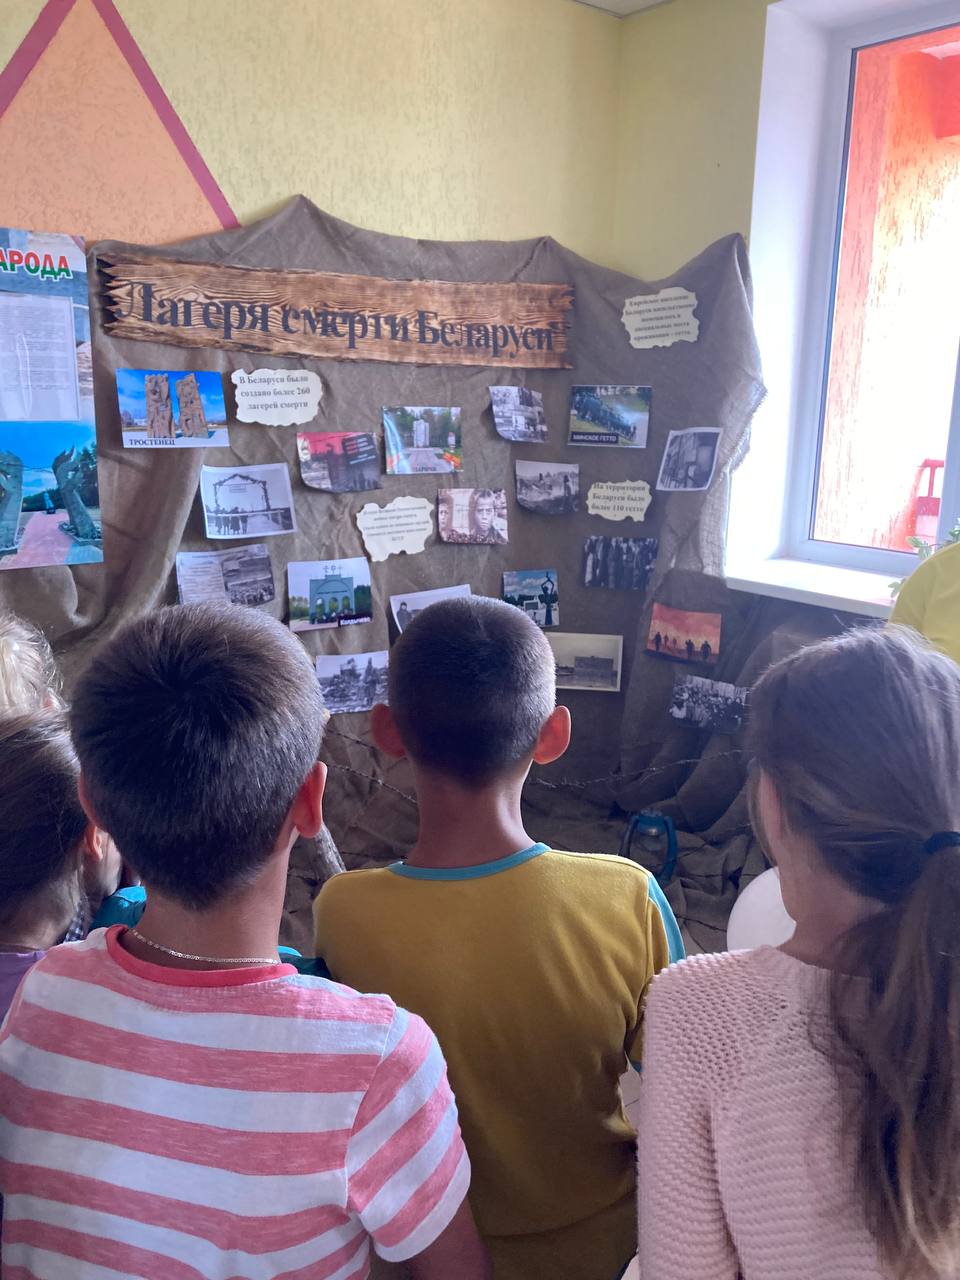 Посщение школьной экспозиции по геноциду белоруского народа